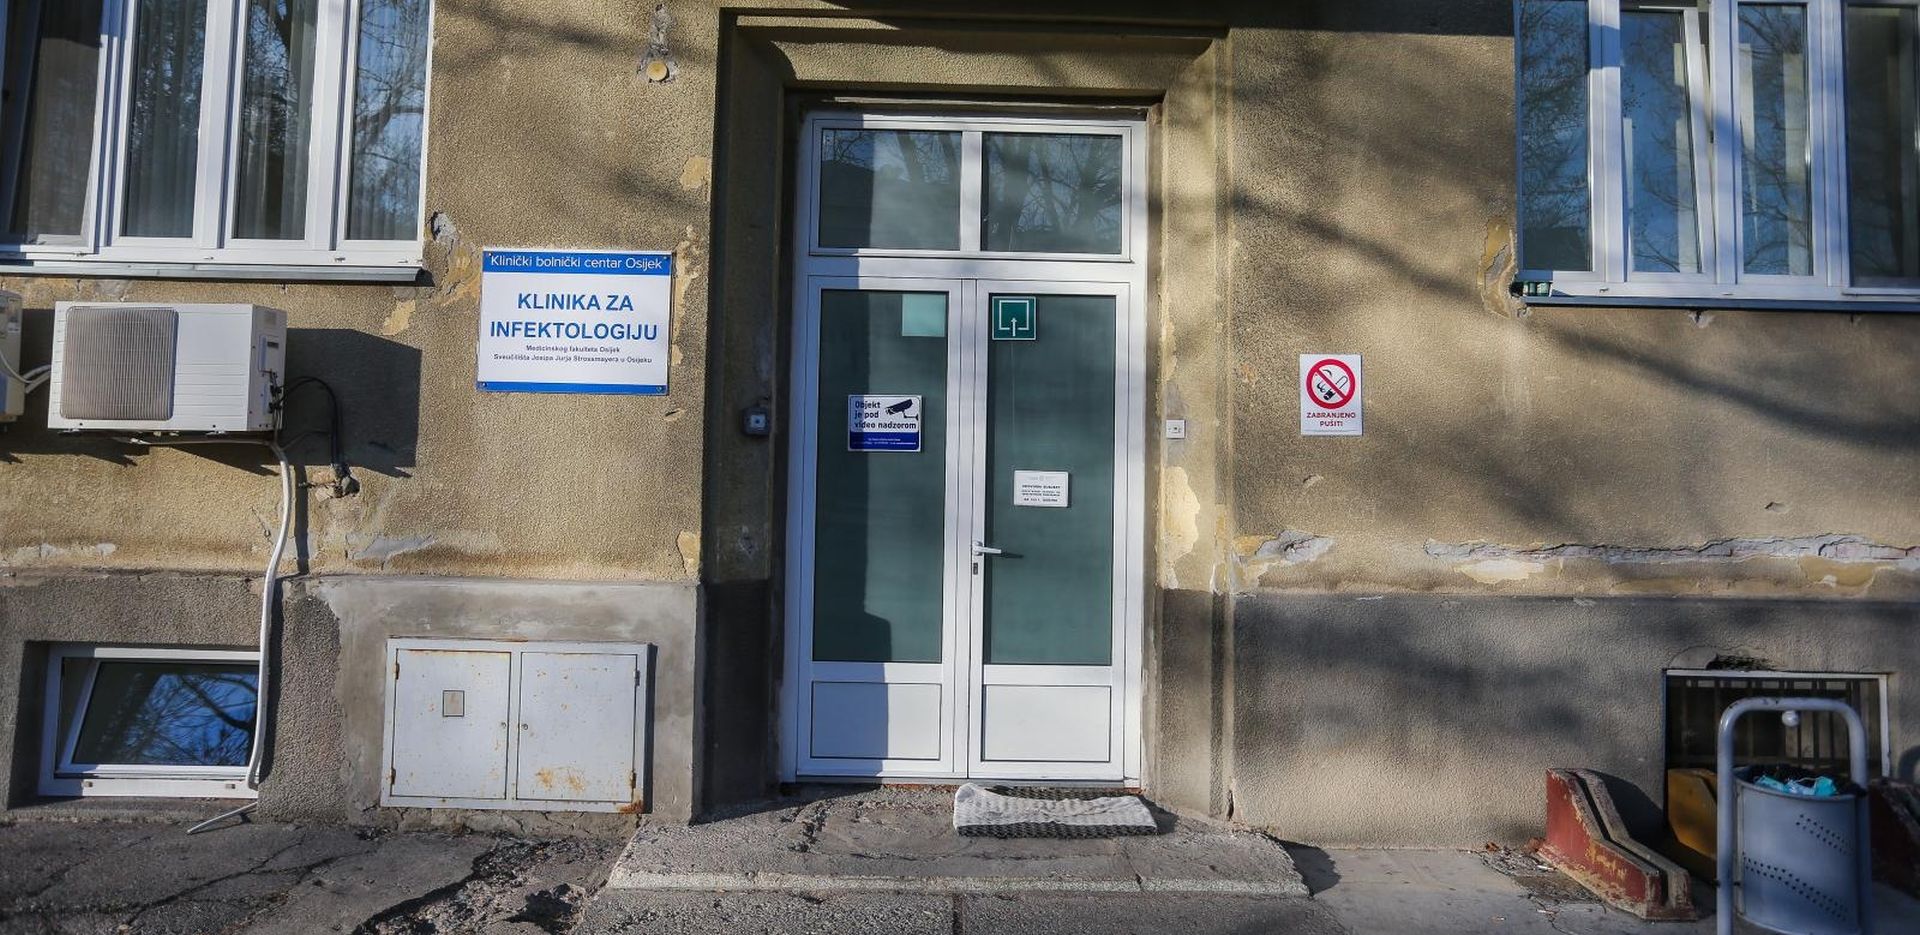 02.02.2020., Osijek - Muskarac se nalazi u izolaciji u KBC-u Osijek zbog sumnje da je zarazen koronavirusom. Prvi test bio je negativan, ali sada se cekaju rezulati dodatnog testiranja kako bi lijecnici bili sigurno radi li se o koronavirusu ili ne. Photo: Davor Javorovic/PIXSELL